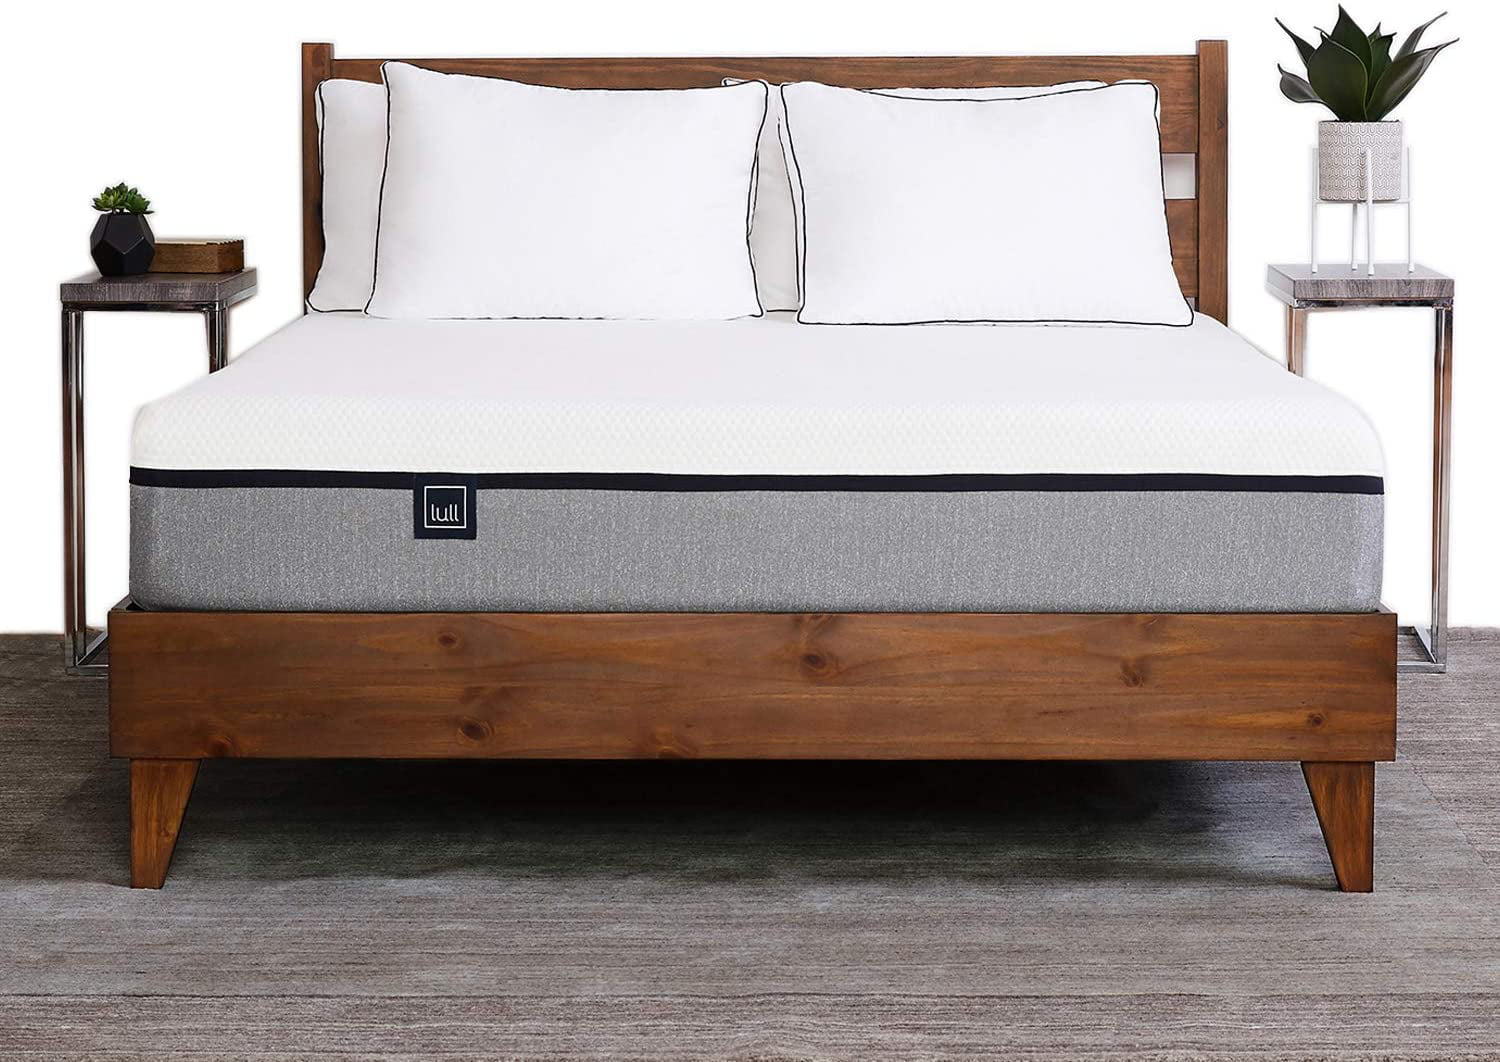 lull sleep queen size mattress